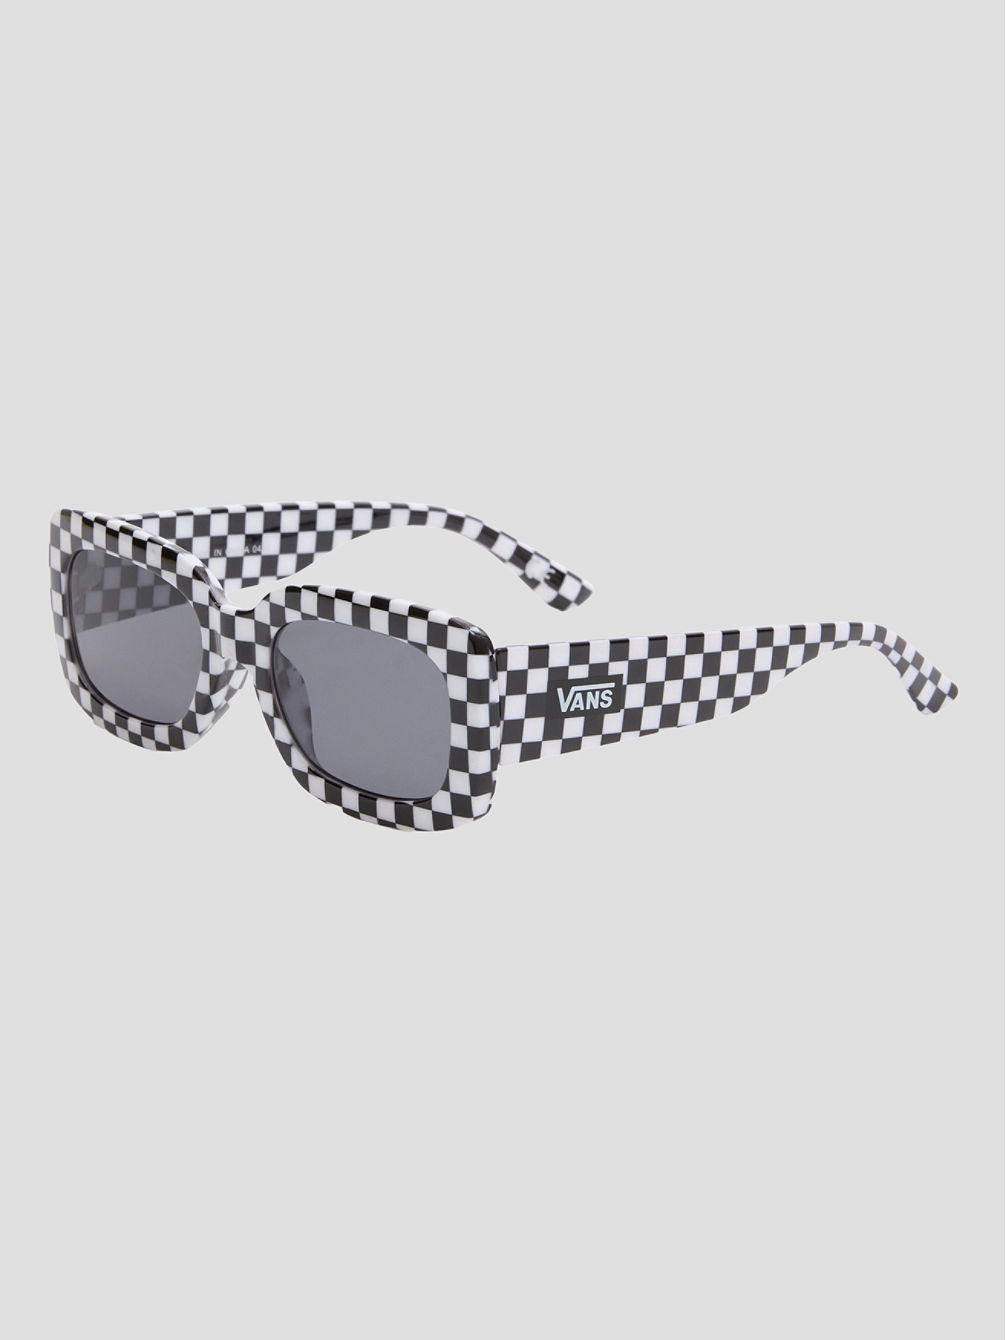 Checky Black/White Checkerboard Gafas de Sol